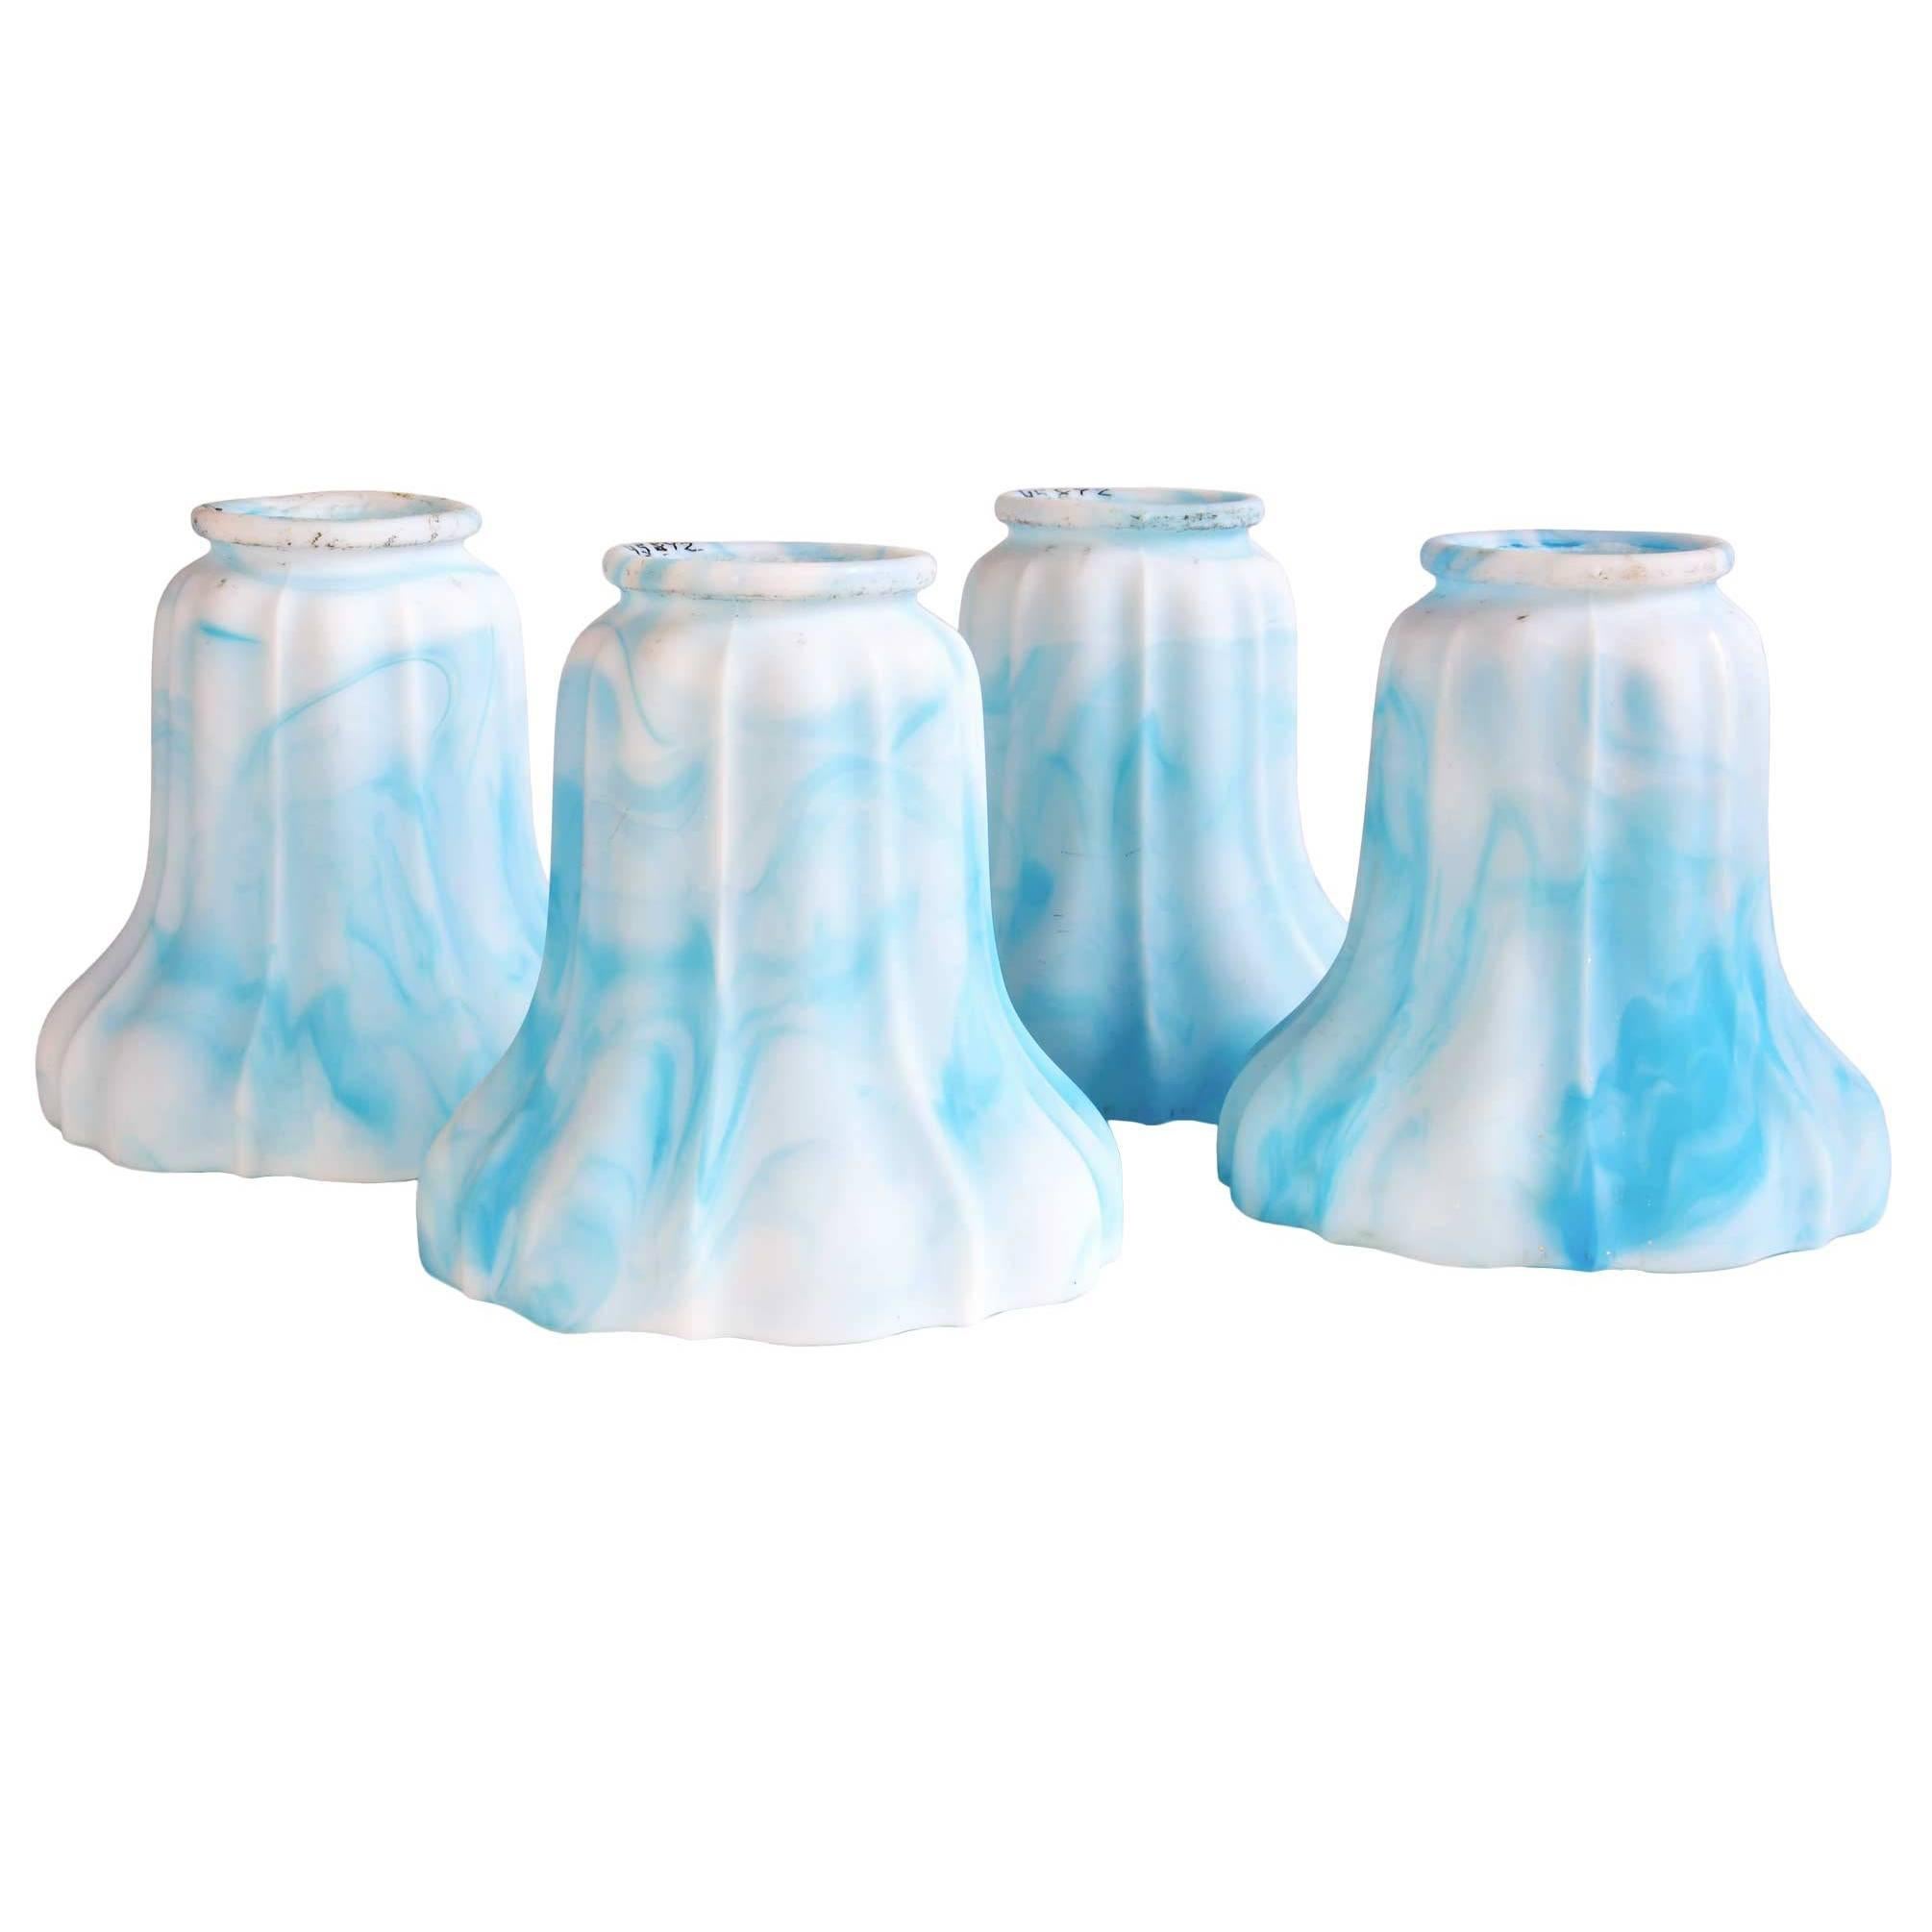 Blue Kokomo Art Glass Shades, Set of Four